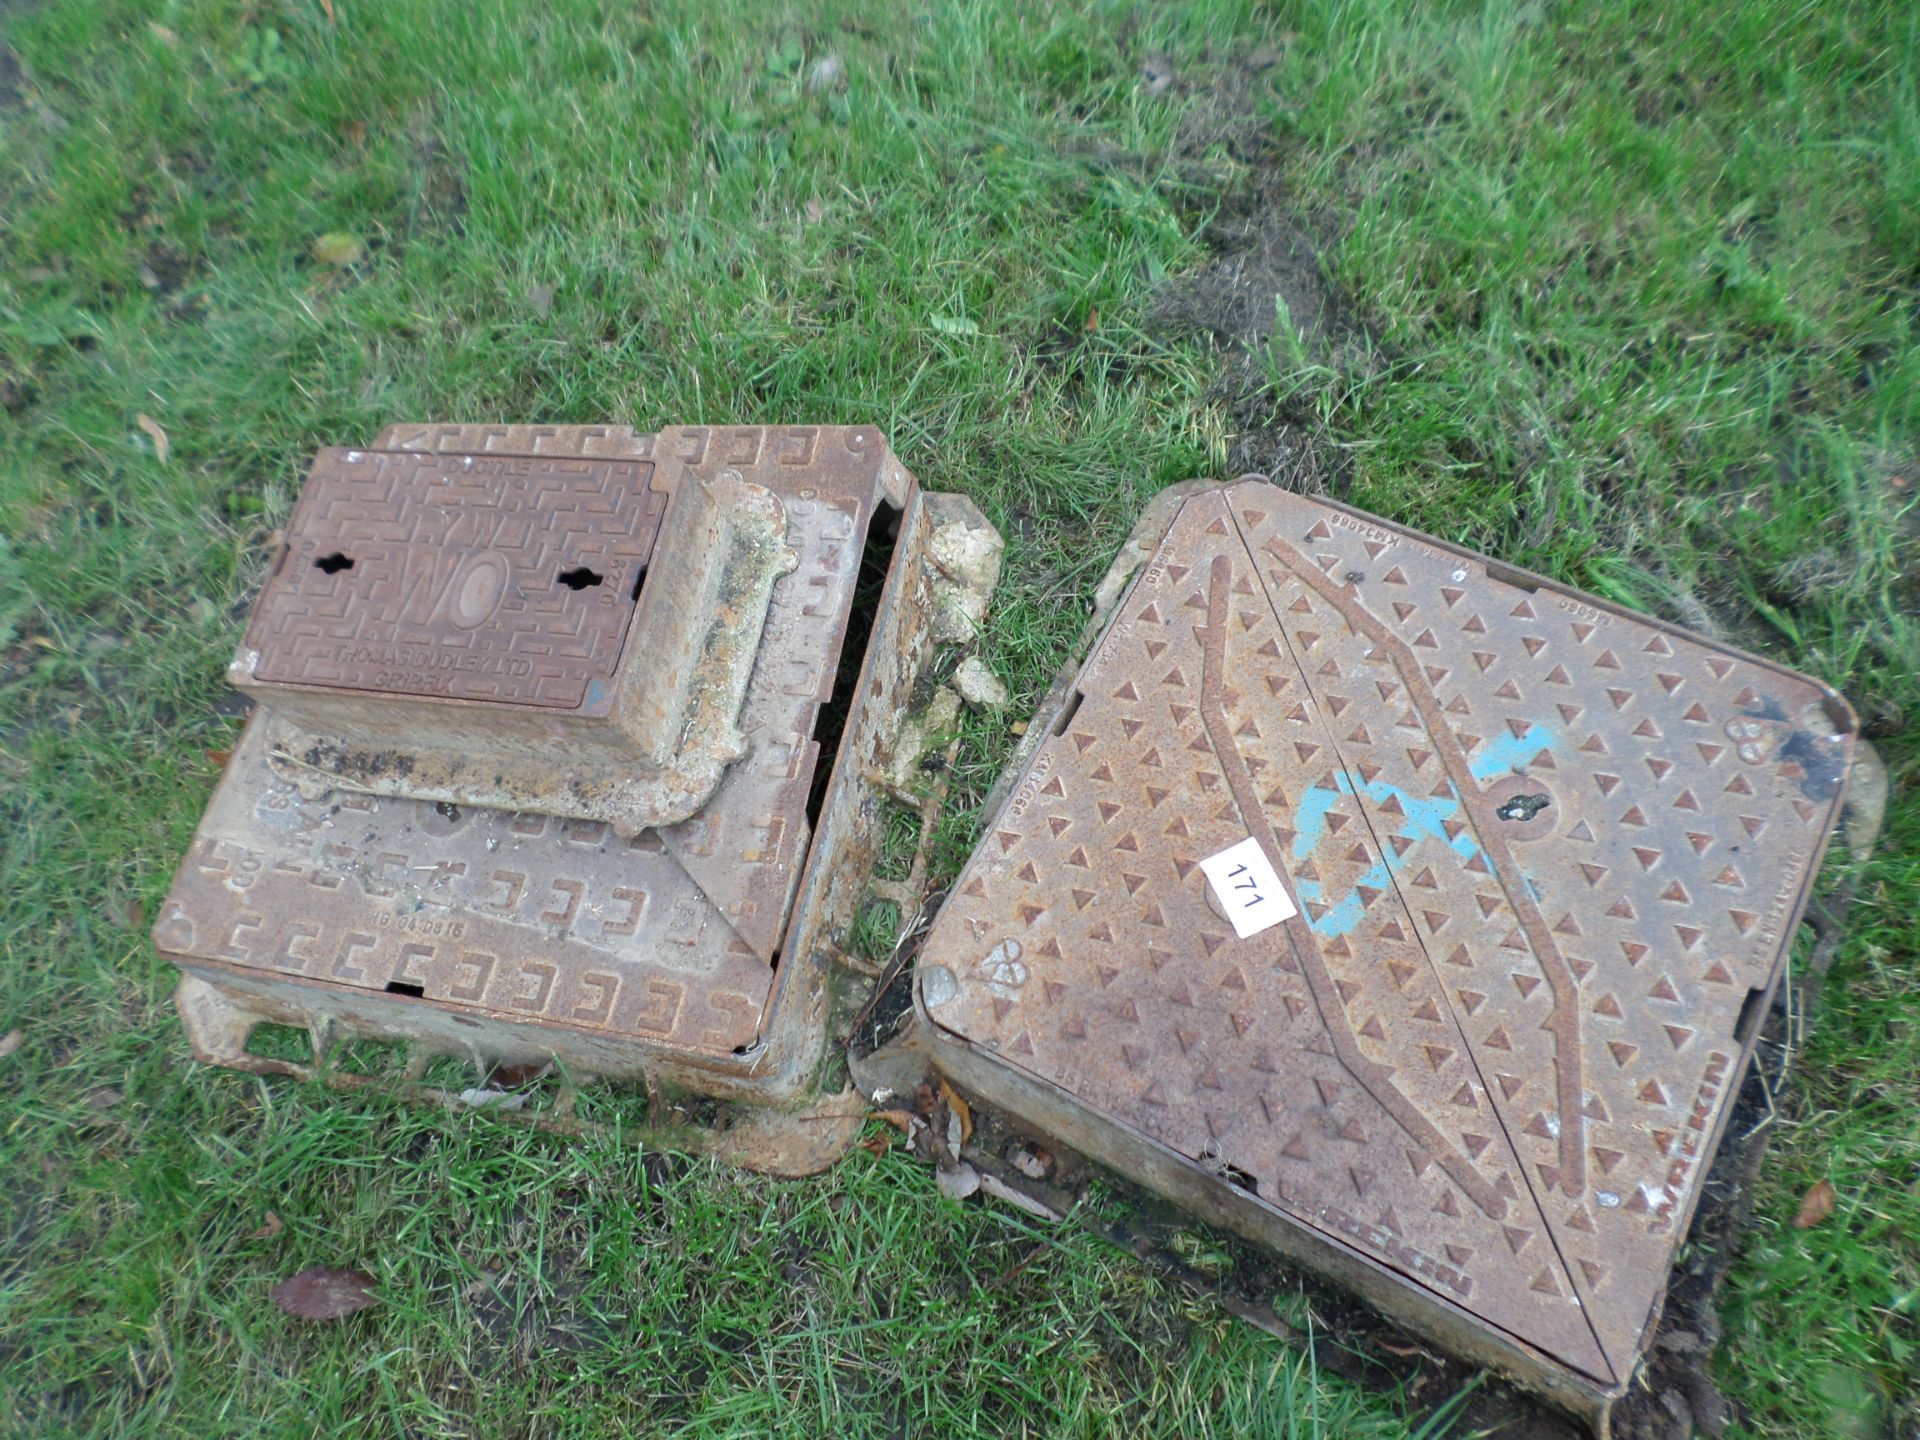 3 heavy duty cast iron manhole covers NO VAT - Image 2 of 2